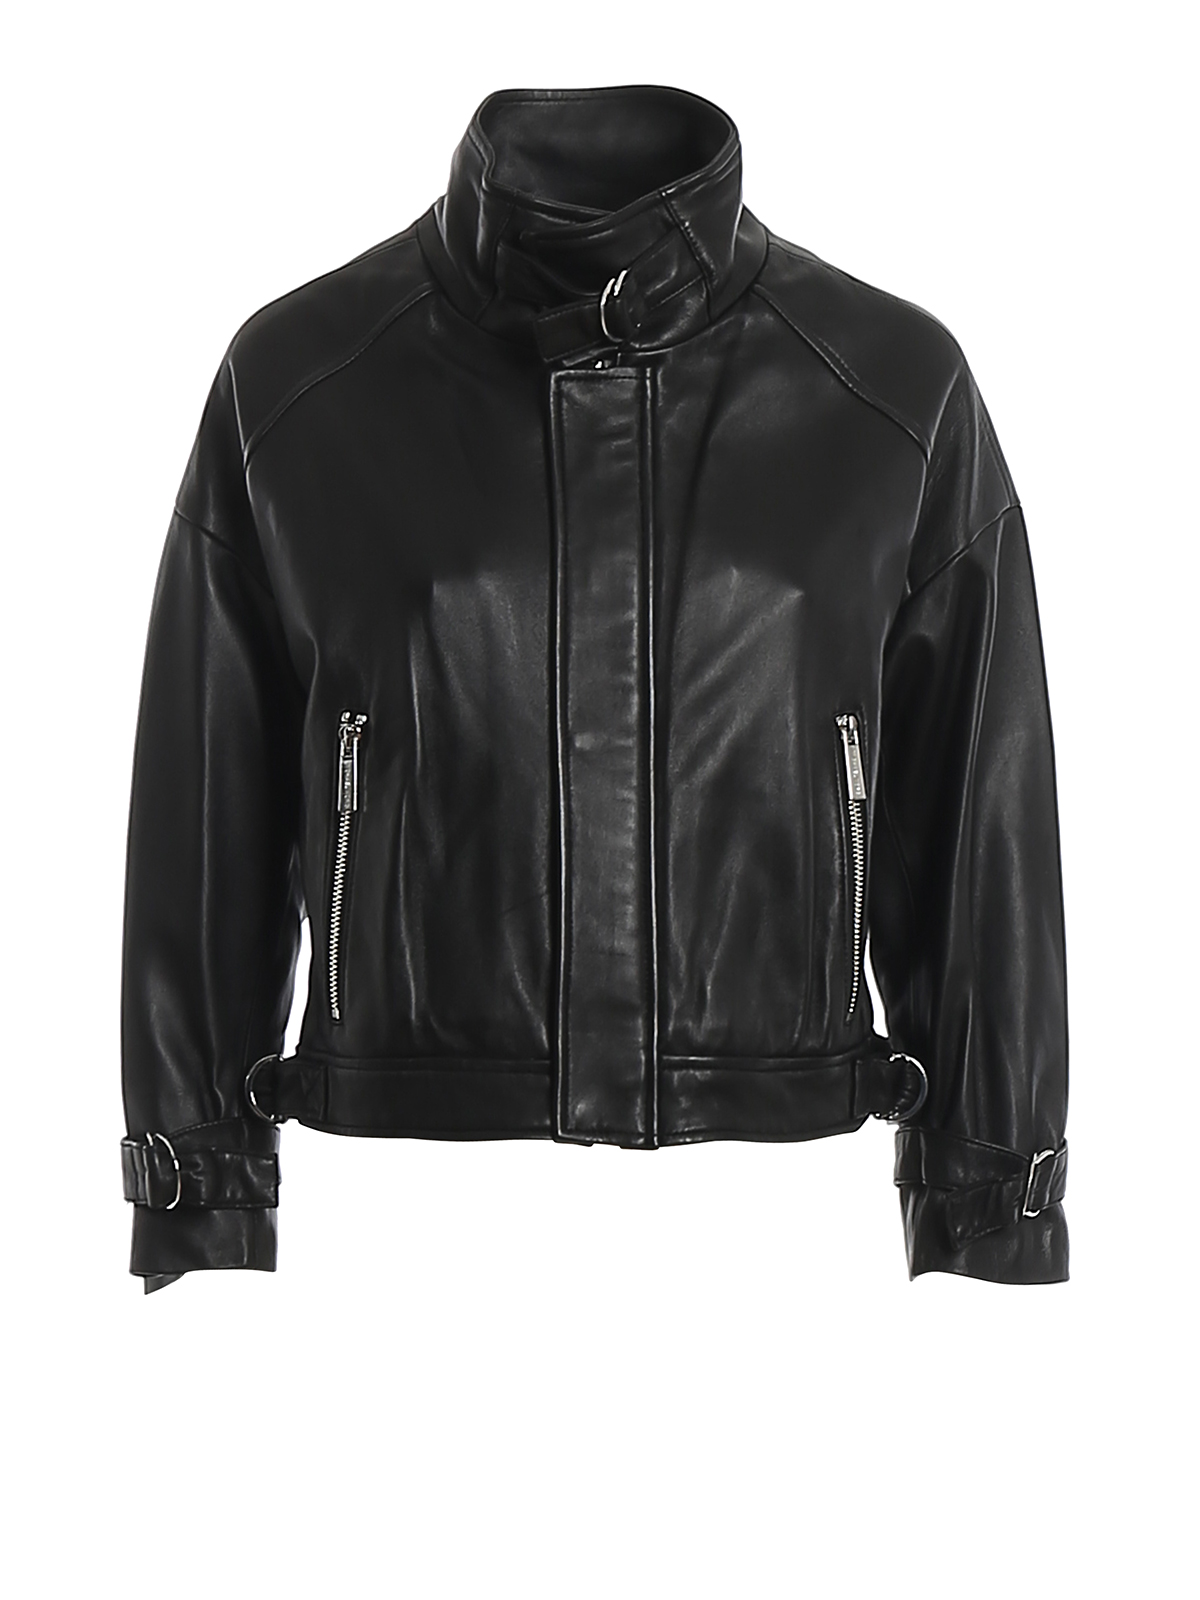 Michael Kors Leather Knittrim Motorcycle Jacket in Black  Lyst